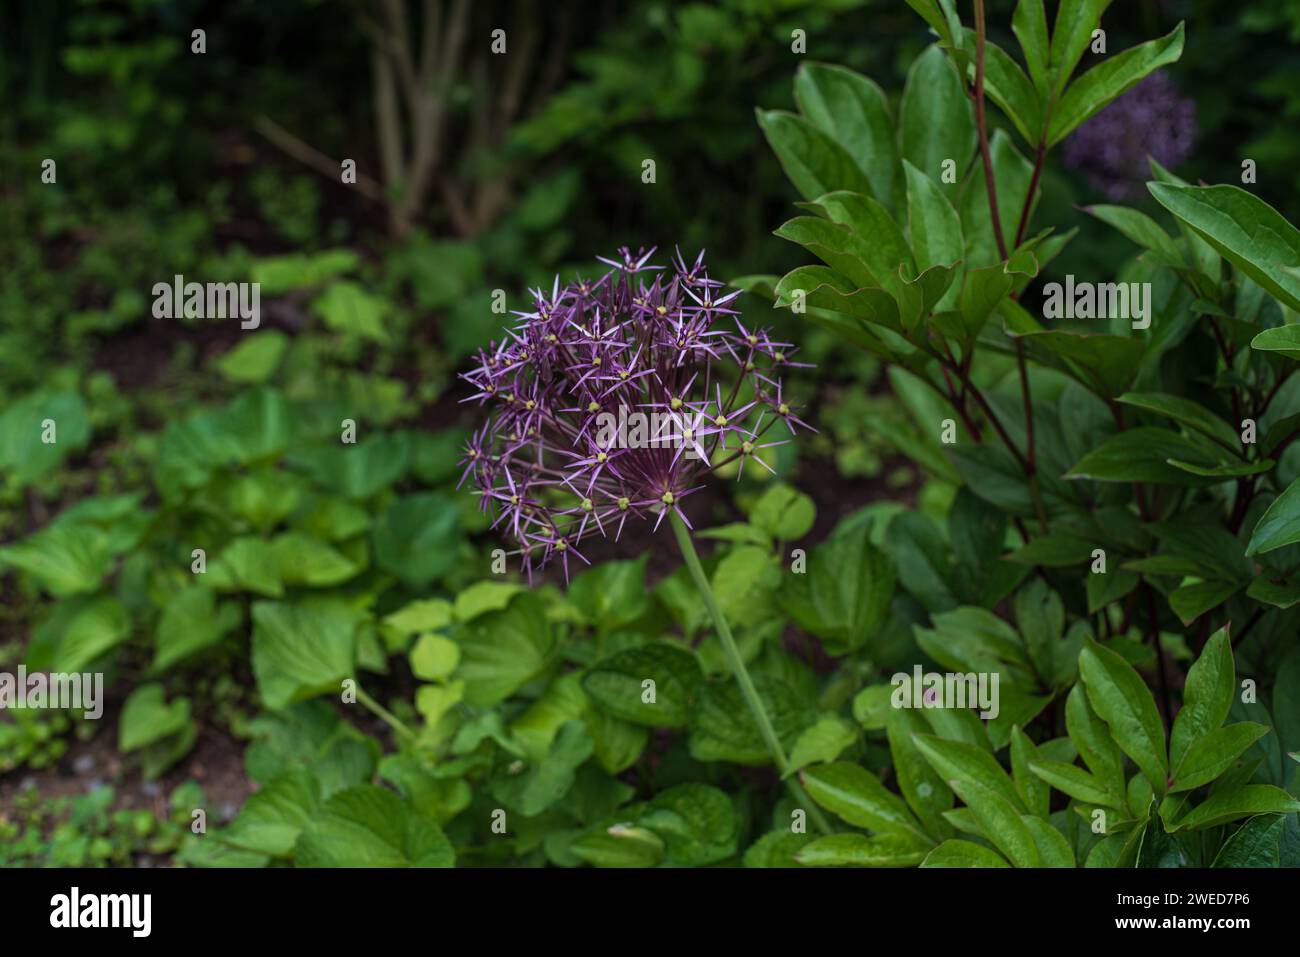 Osservando la bellezza celeste delle stelle della Persia (Allium Christophii) mentre fioriscono, aggiungendo un tocco incantevole al giardino primaverile Foto Stock